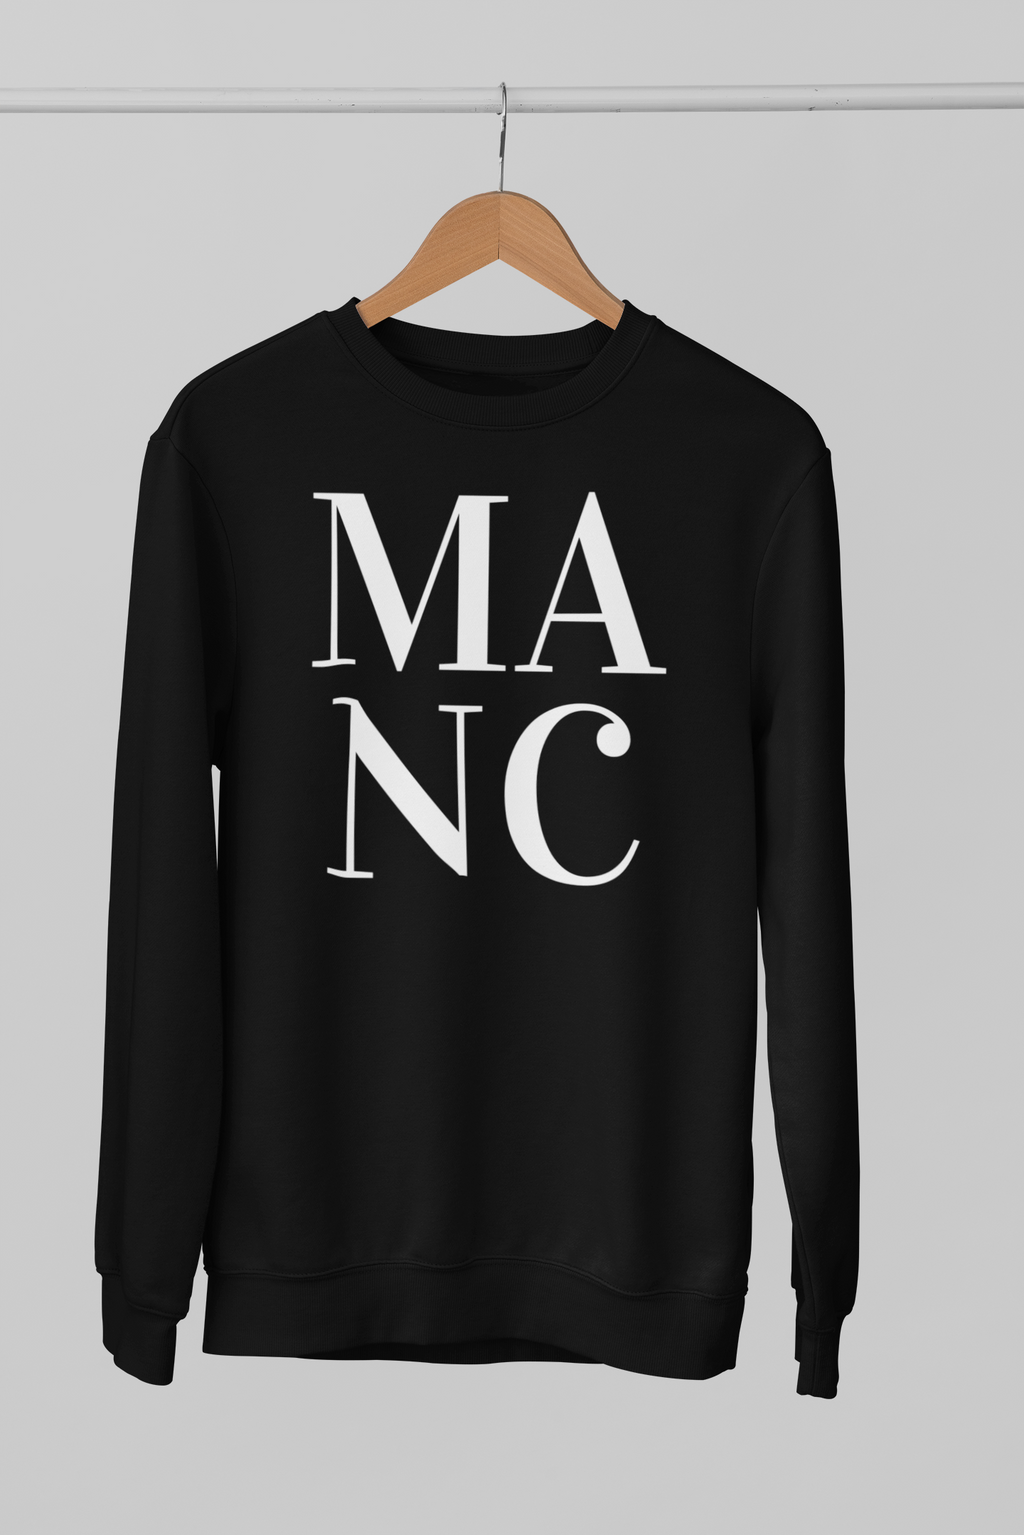 MANC Northern Slang Sweatshirt Unisex